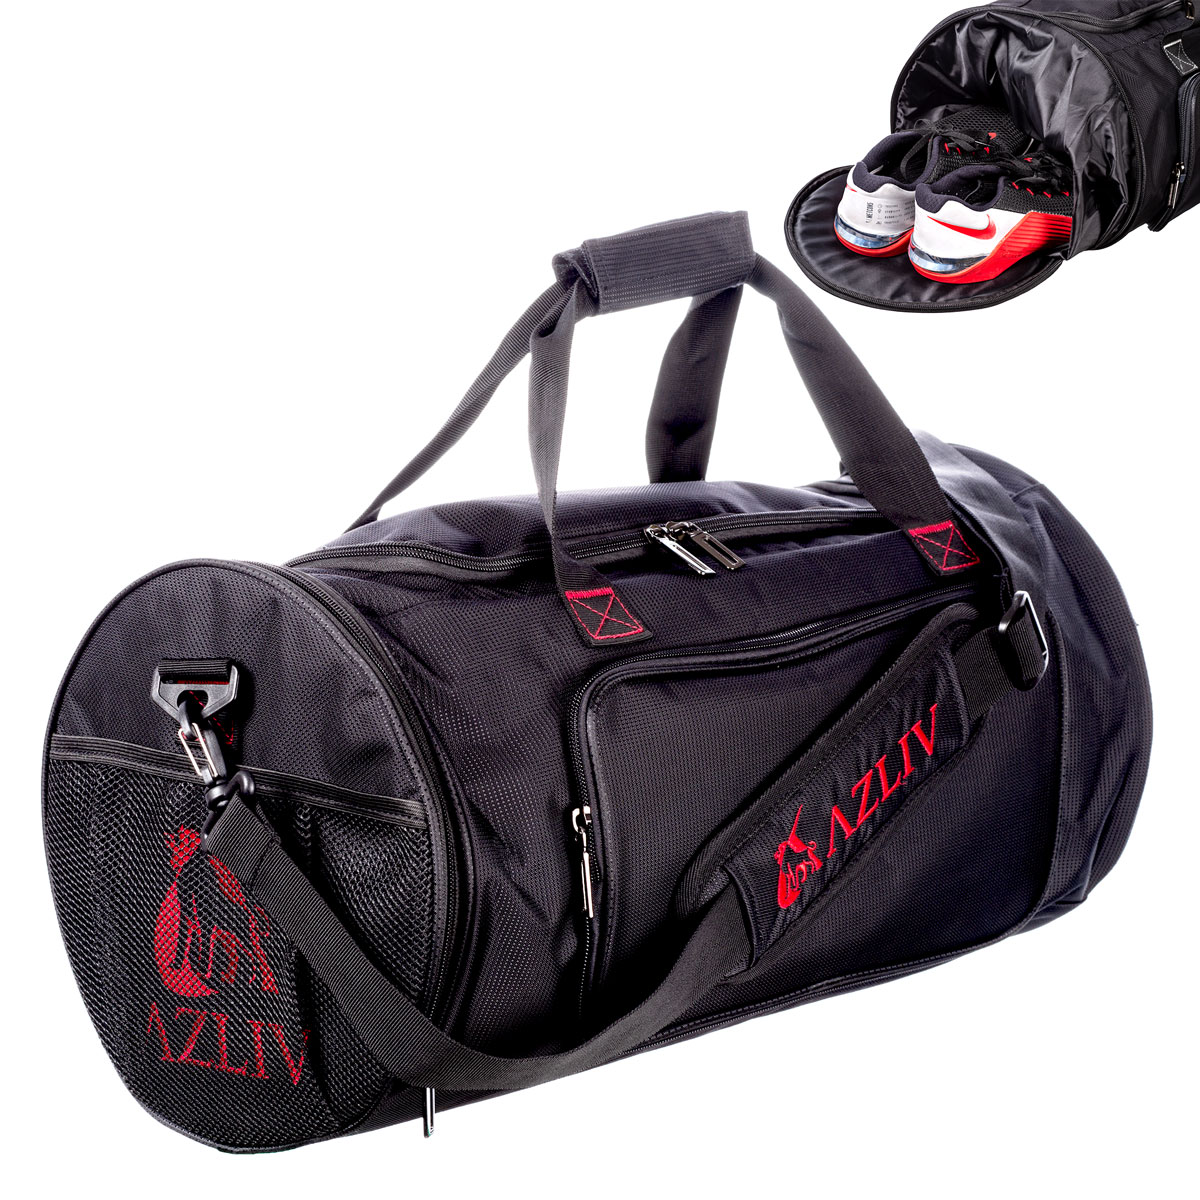 完璧 AZLIV アズリブ ジムバッグ CREWZ1 クルーズワン スポーツバッグ ボストンバッグ ダッフルバッグ 多機能 大容量 シューズ